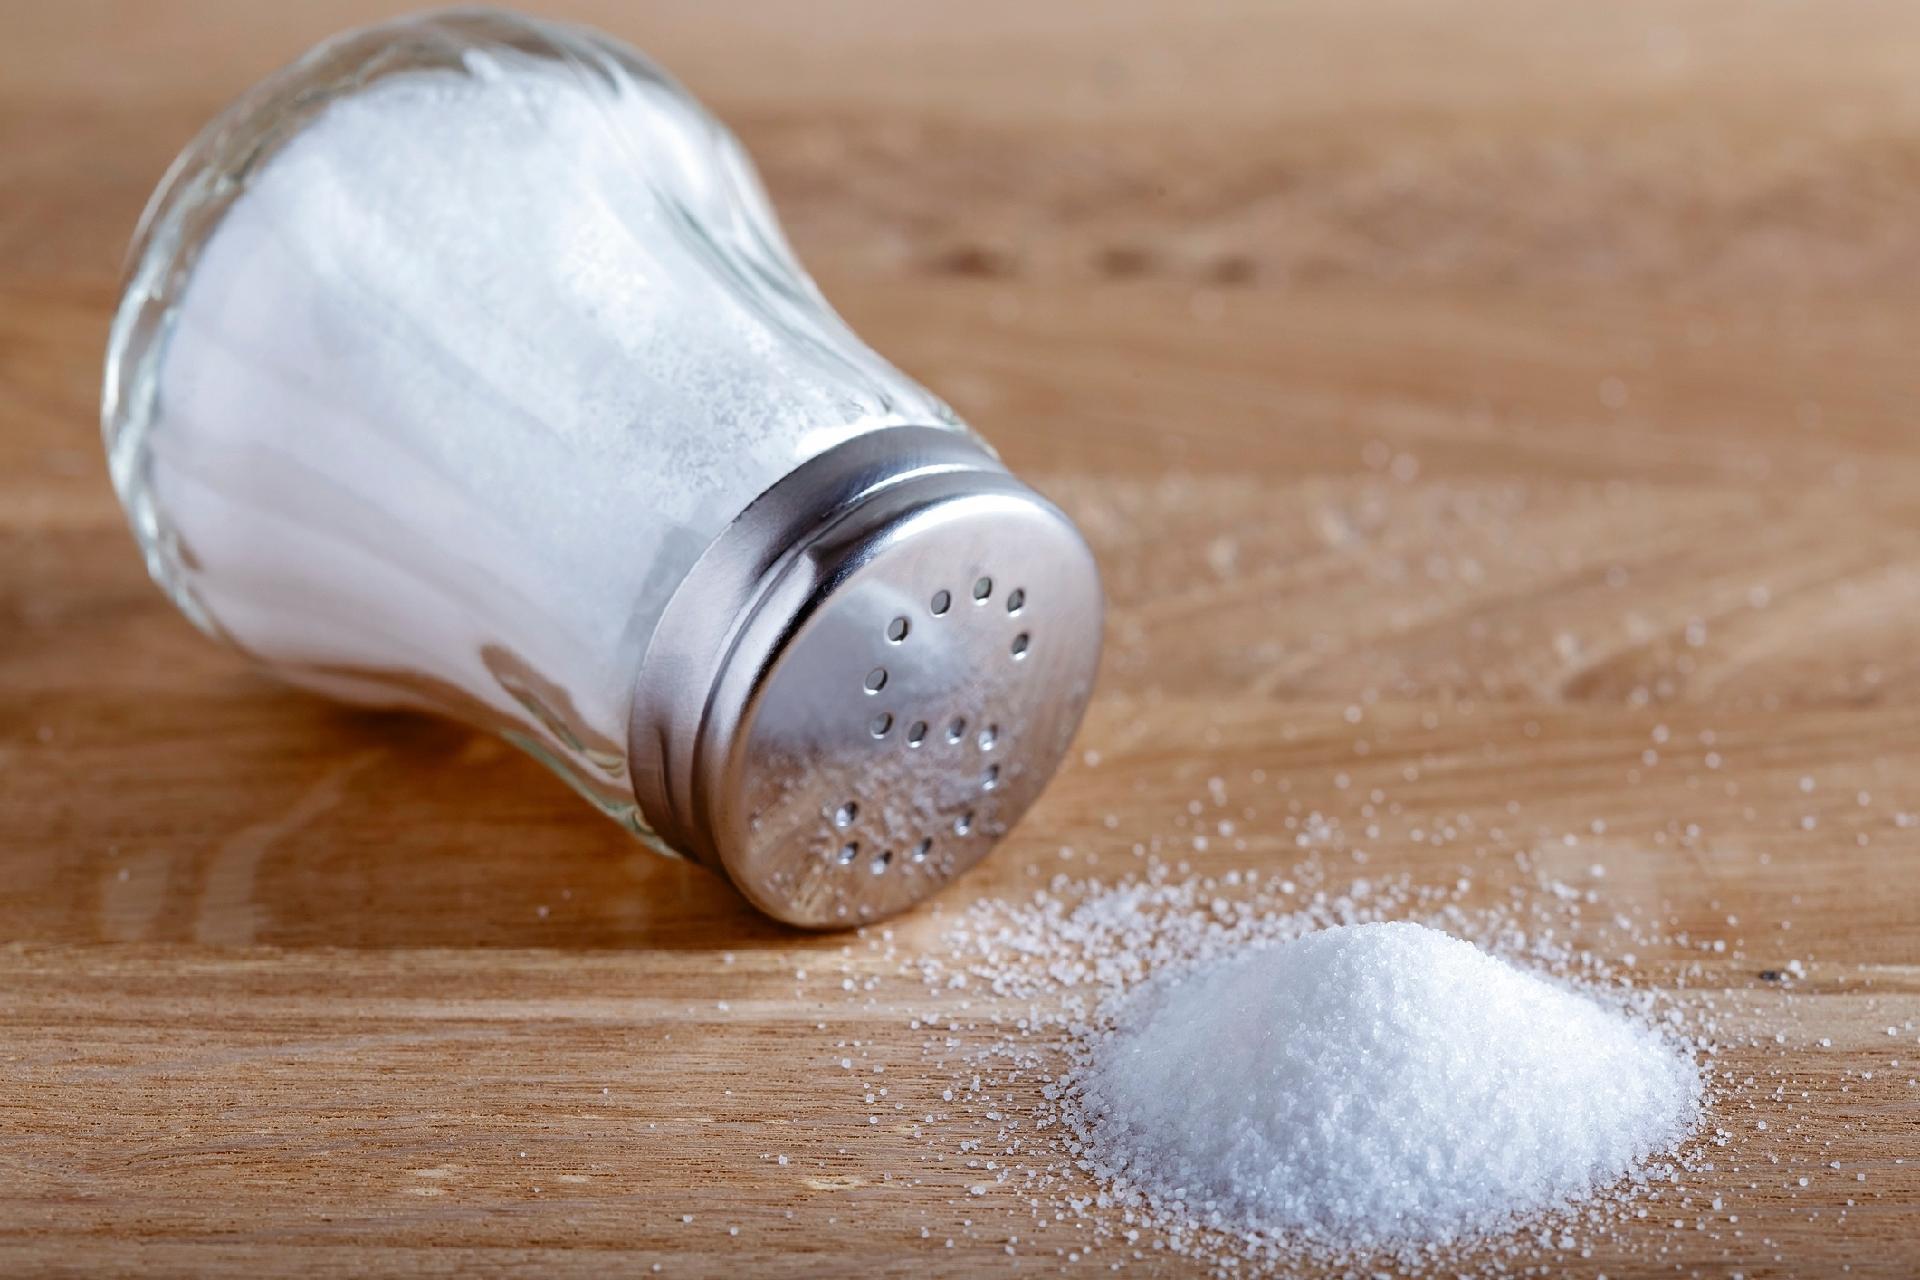 Quer diminuir consumo de sal? Veja dicas e substituições saudáveis -  30/06/2021 - UOL VivaBem